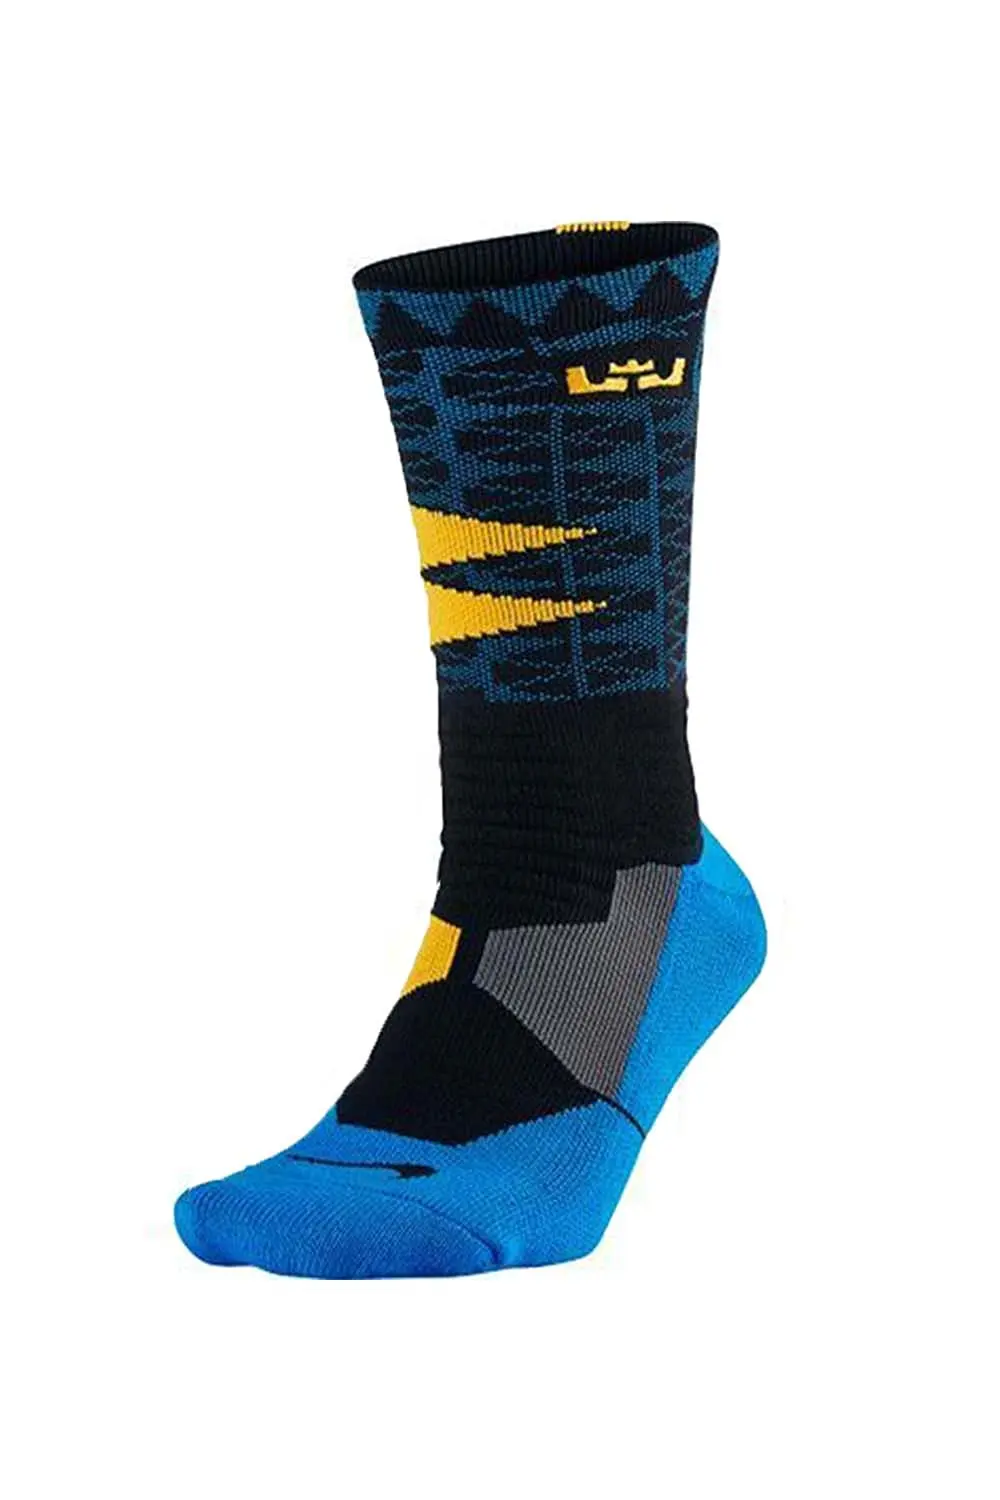 nike lebron hyper elite socks